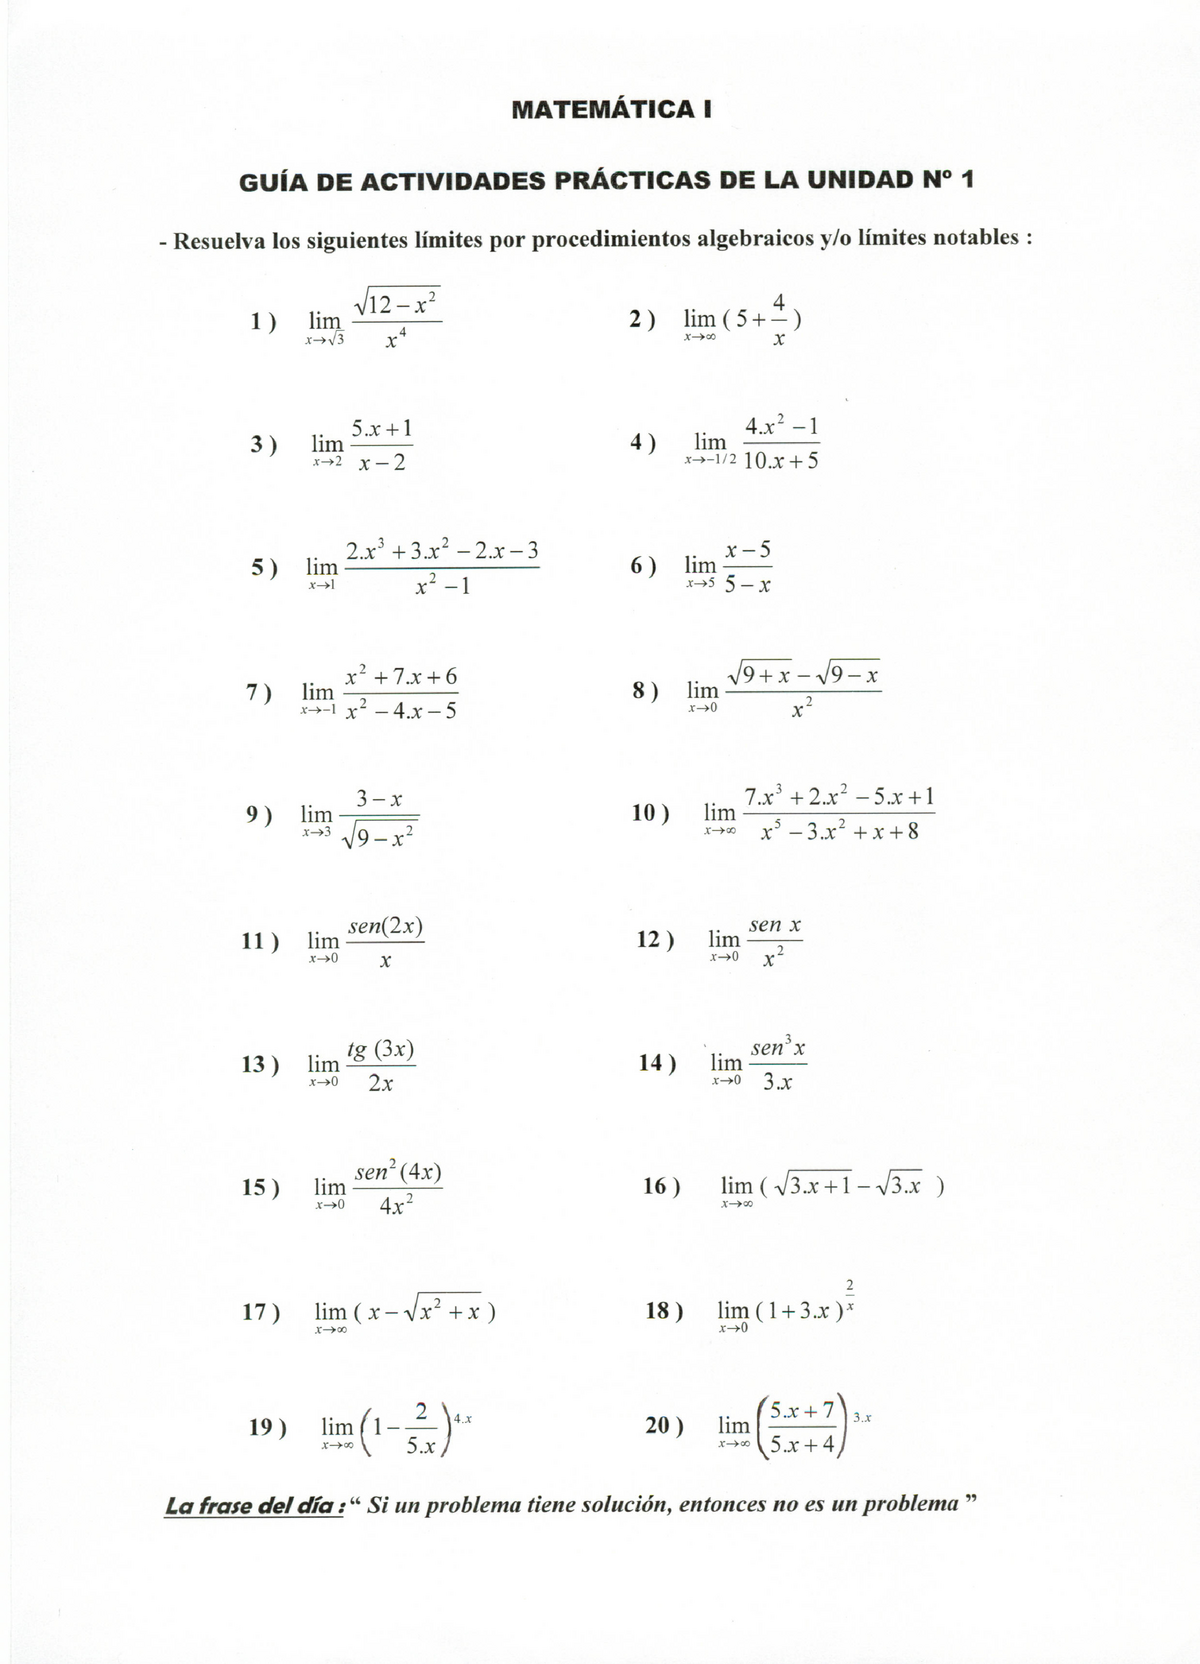 Ejercicios Resueltos De Limites Matematica I Guia De Actividades Practicas De La Unidad N° 1 8440